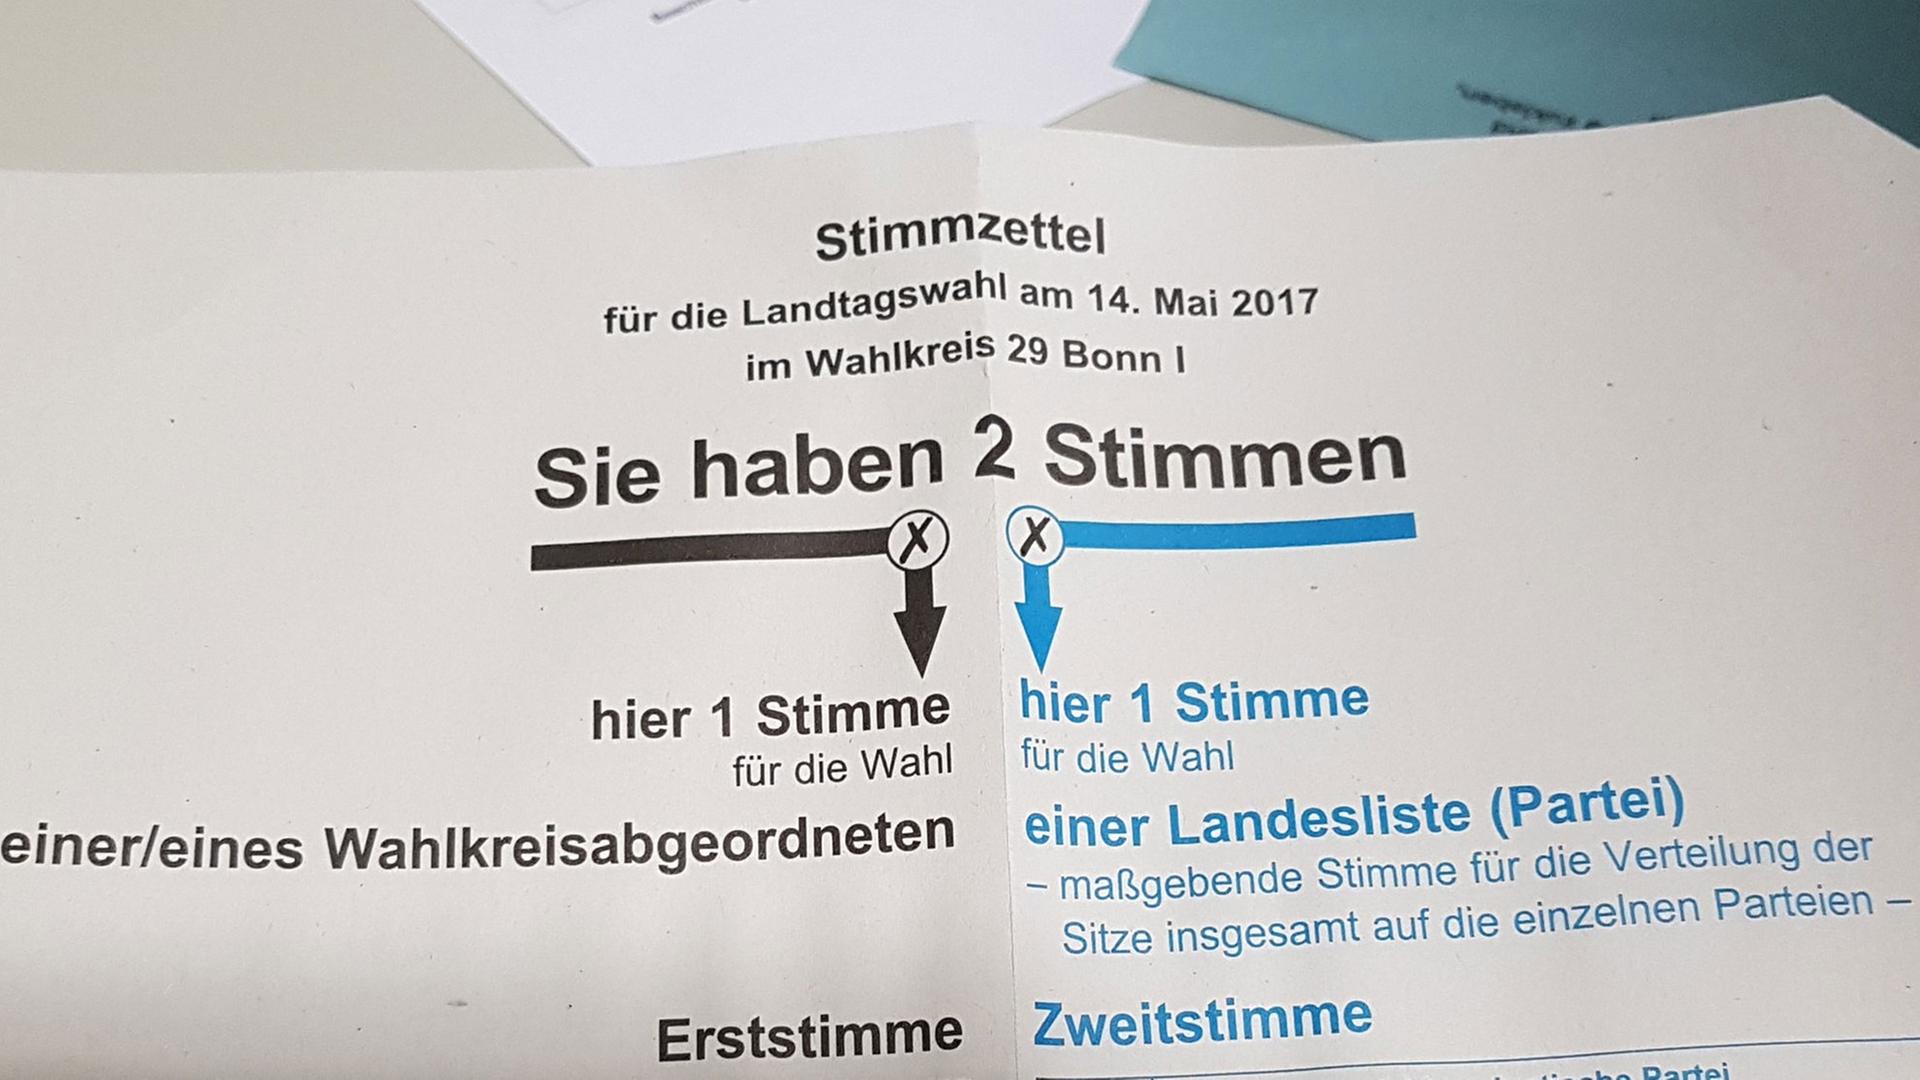 Ein Stimmzettel für die Landtagswahl in Nordrhein-Westfalen am 14. Mai.